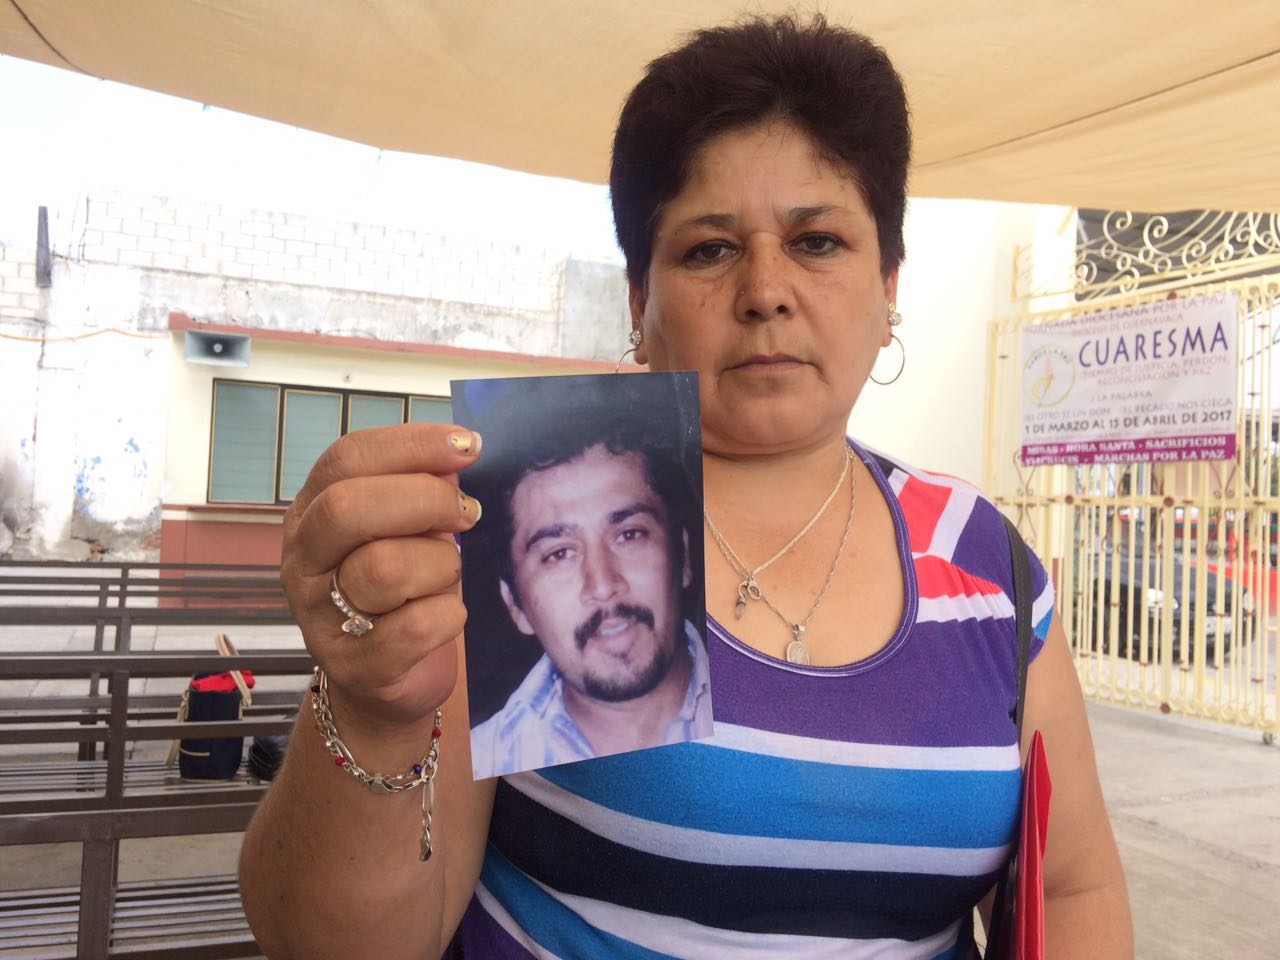 “La búsqueda de familiares desaparecidos debería ser llevada por el Estado, pero es tan corrupto que no lo hace”: Tomasa, hermana de desaparecido